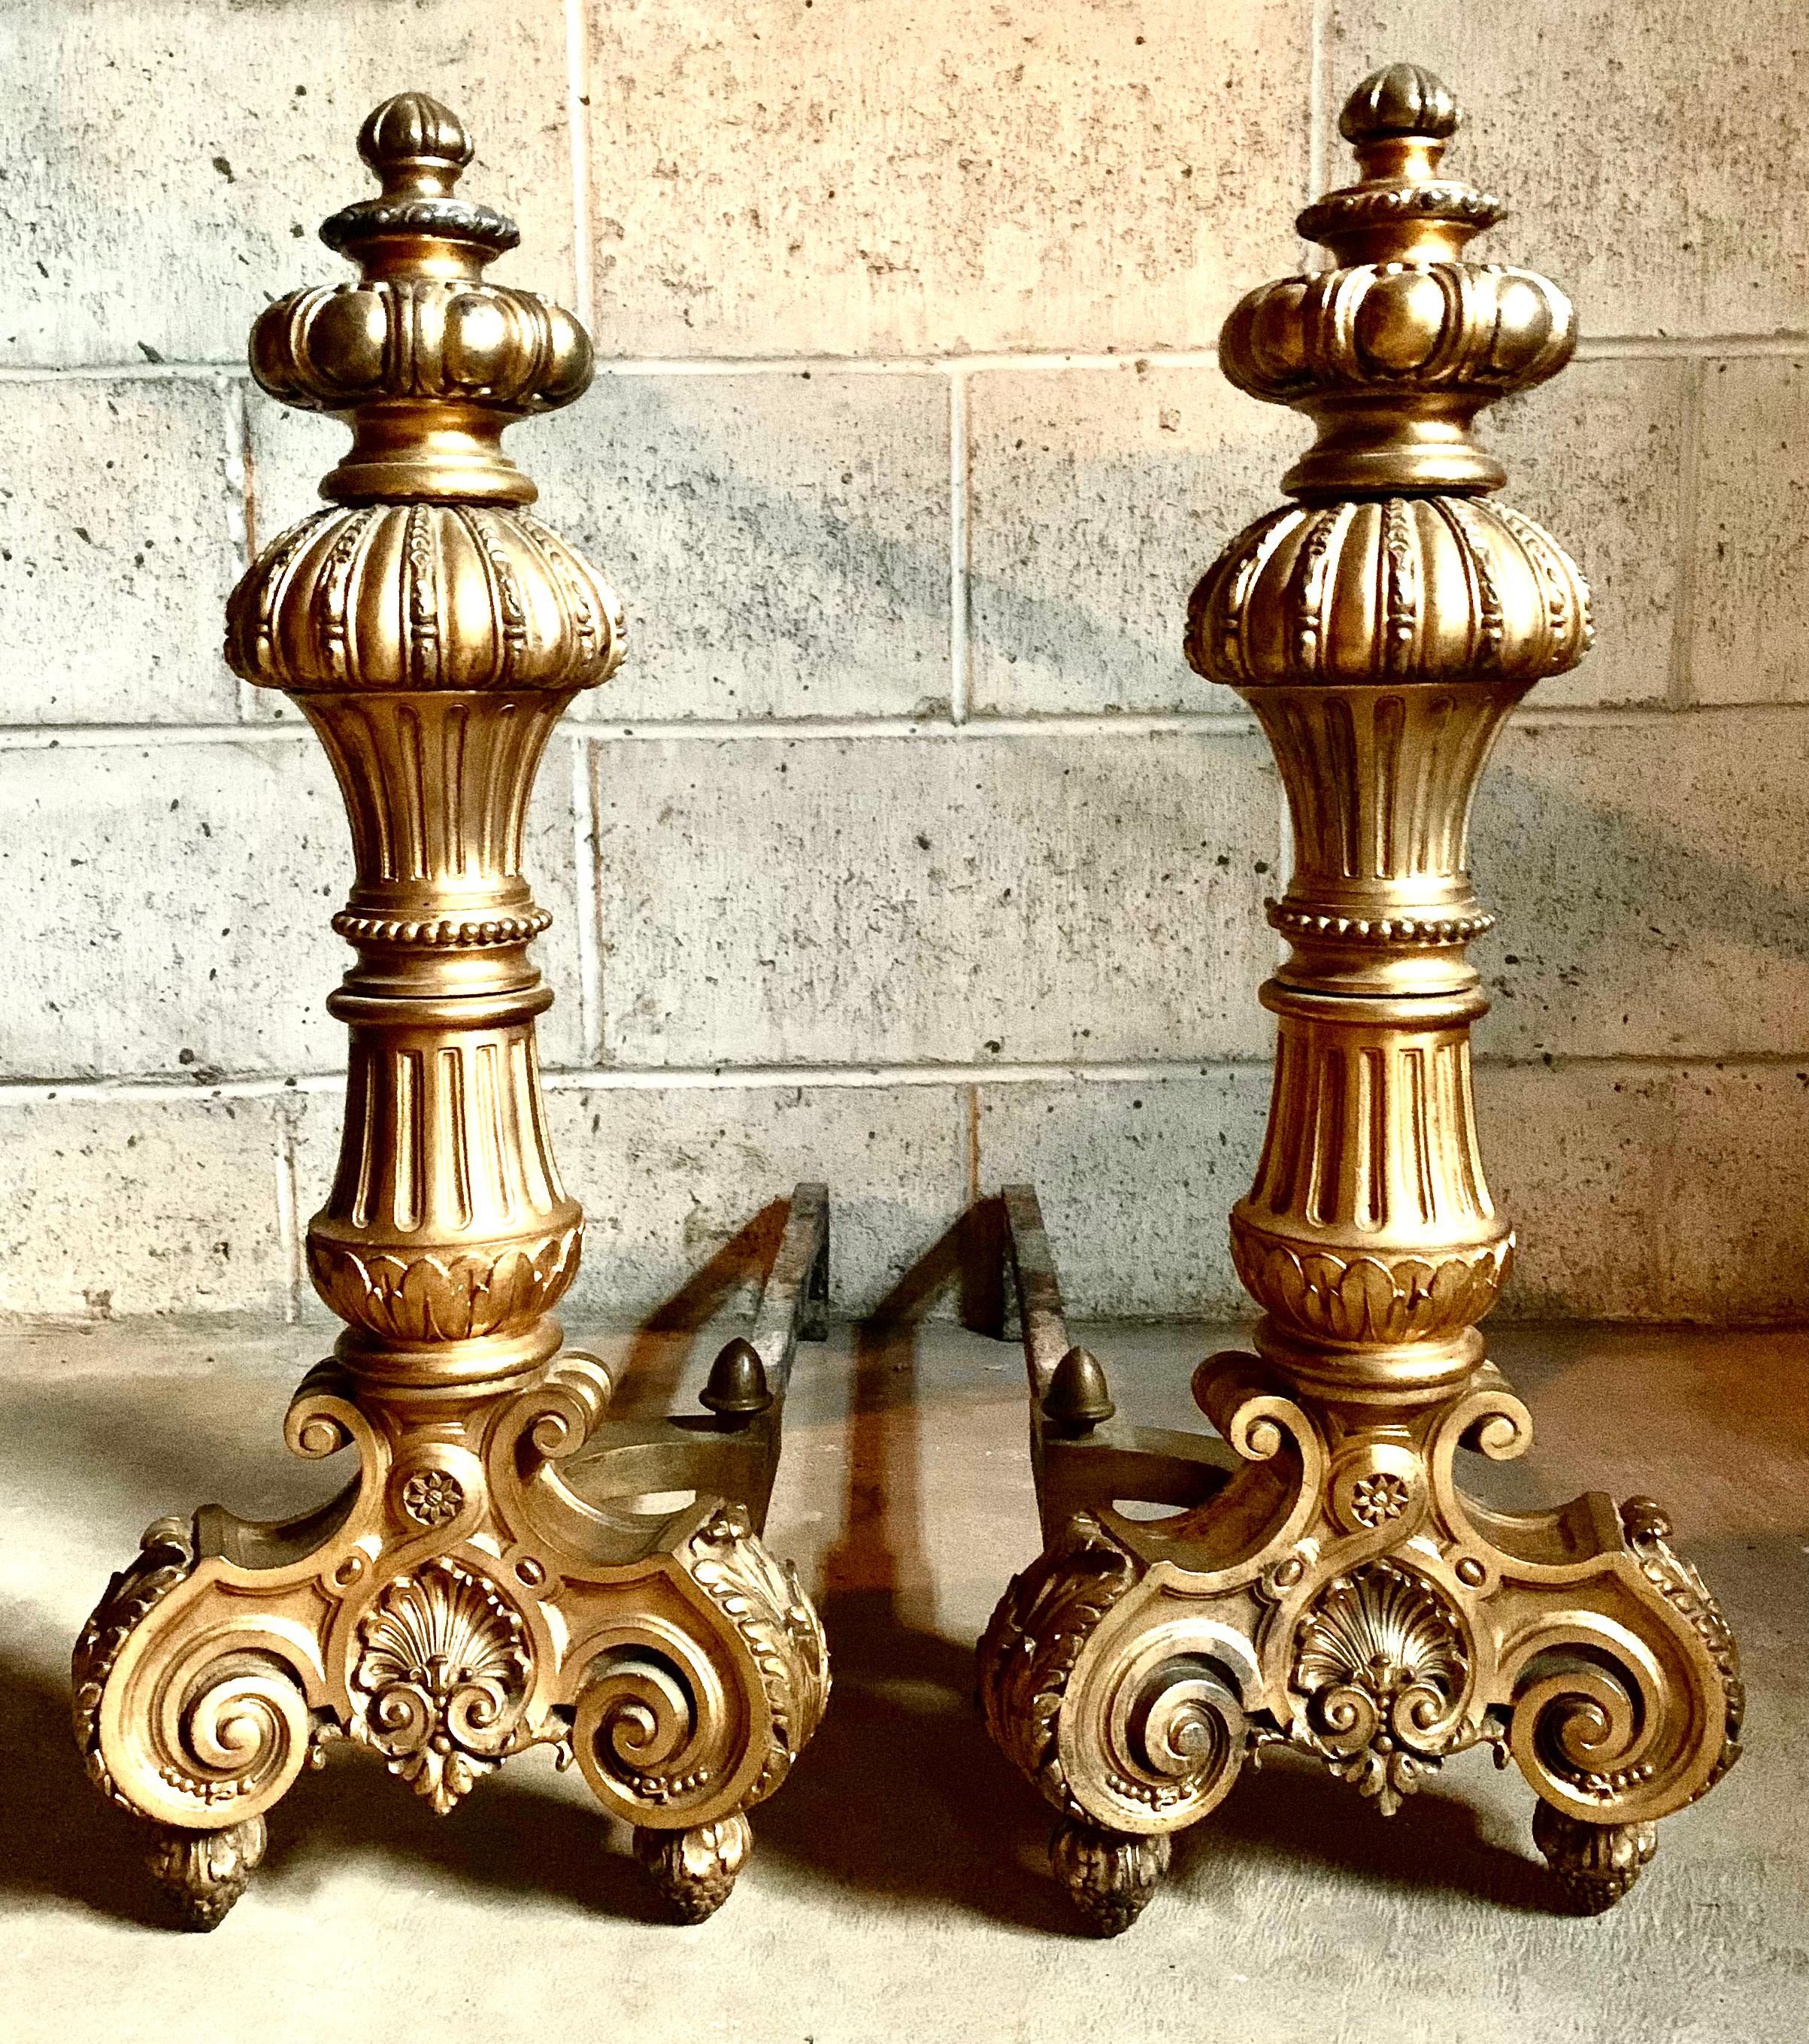 Großes und beeindruckendes Paar vergoldeter Bronze-Andirons im Stil Louis XIV des 19. Jahrhunderts.
Ein festliches Feuer ist eine der großen Freuden des Winters und der warme Schein des Feuerscheins auf der feinen französischen vergoldeten Bronze